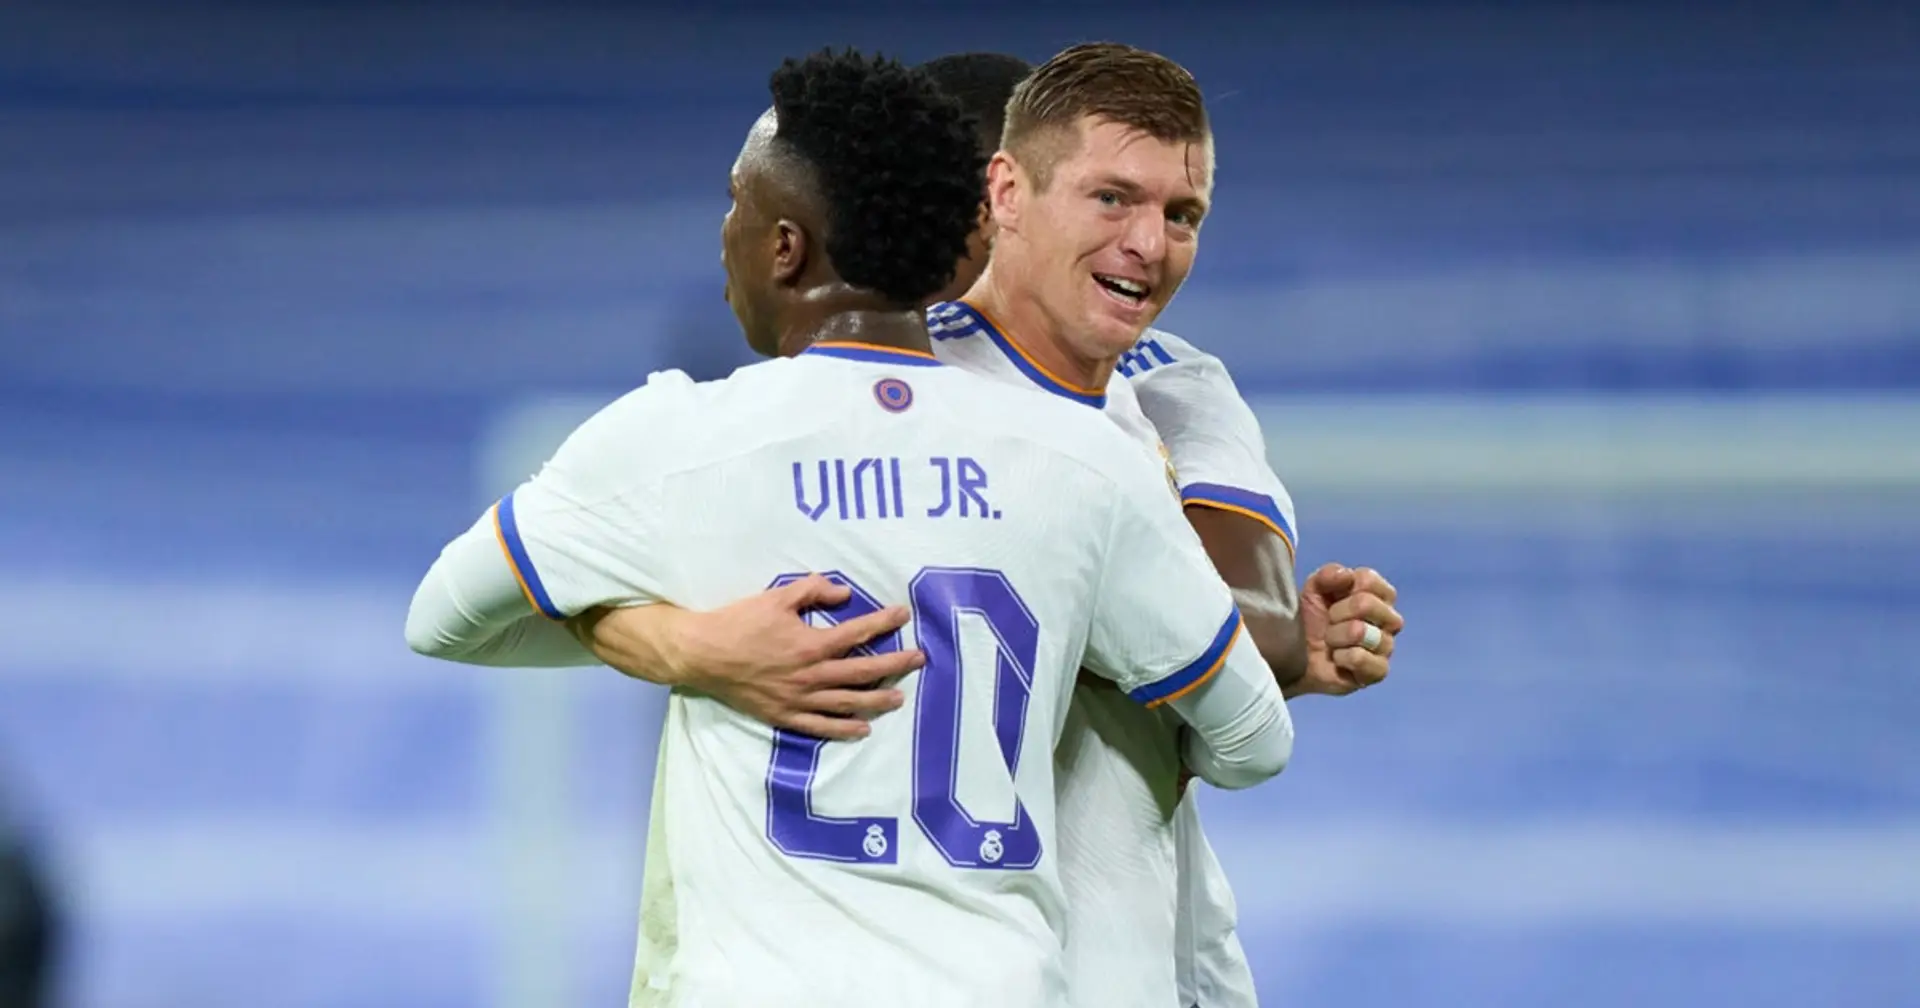 Militao - 9, Jovic - 6.5: valoración de los jugadores del Real Madrid en la victoria ante el Inter